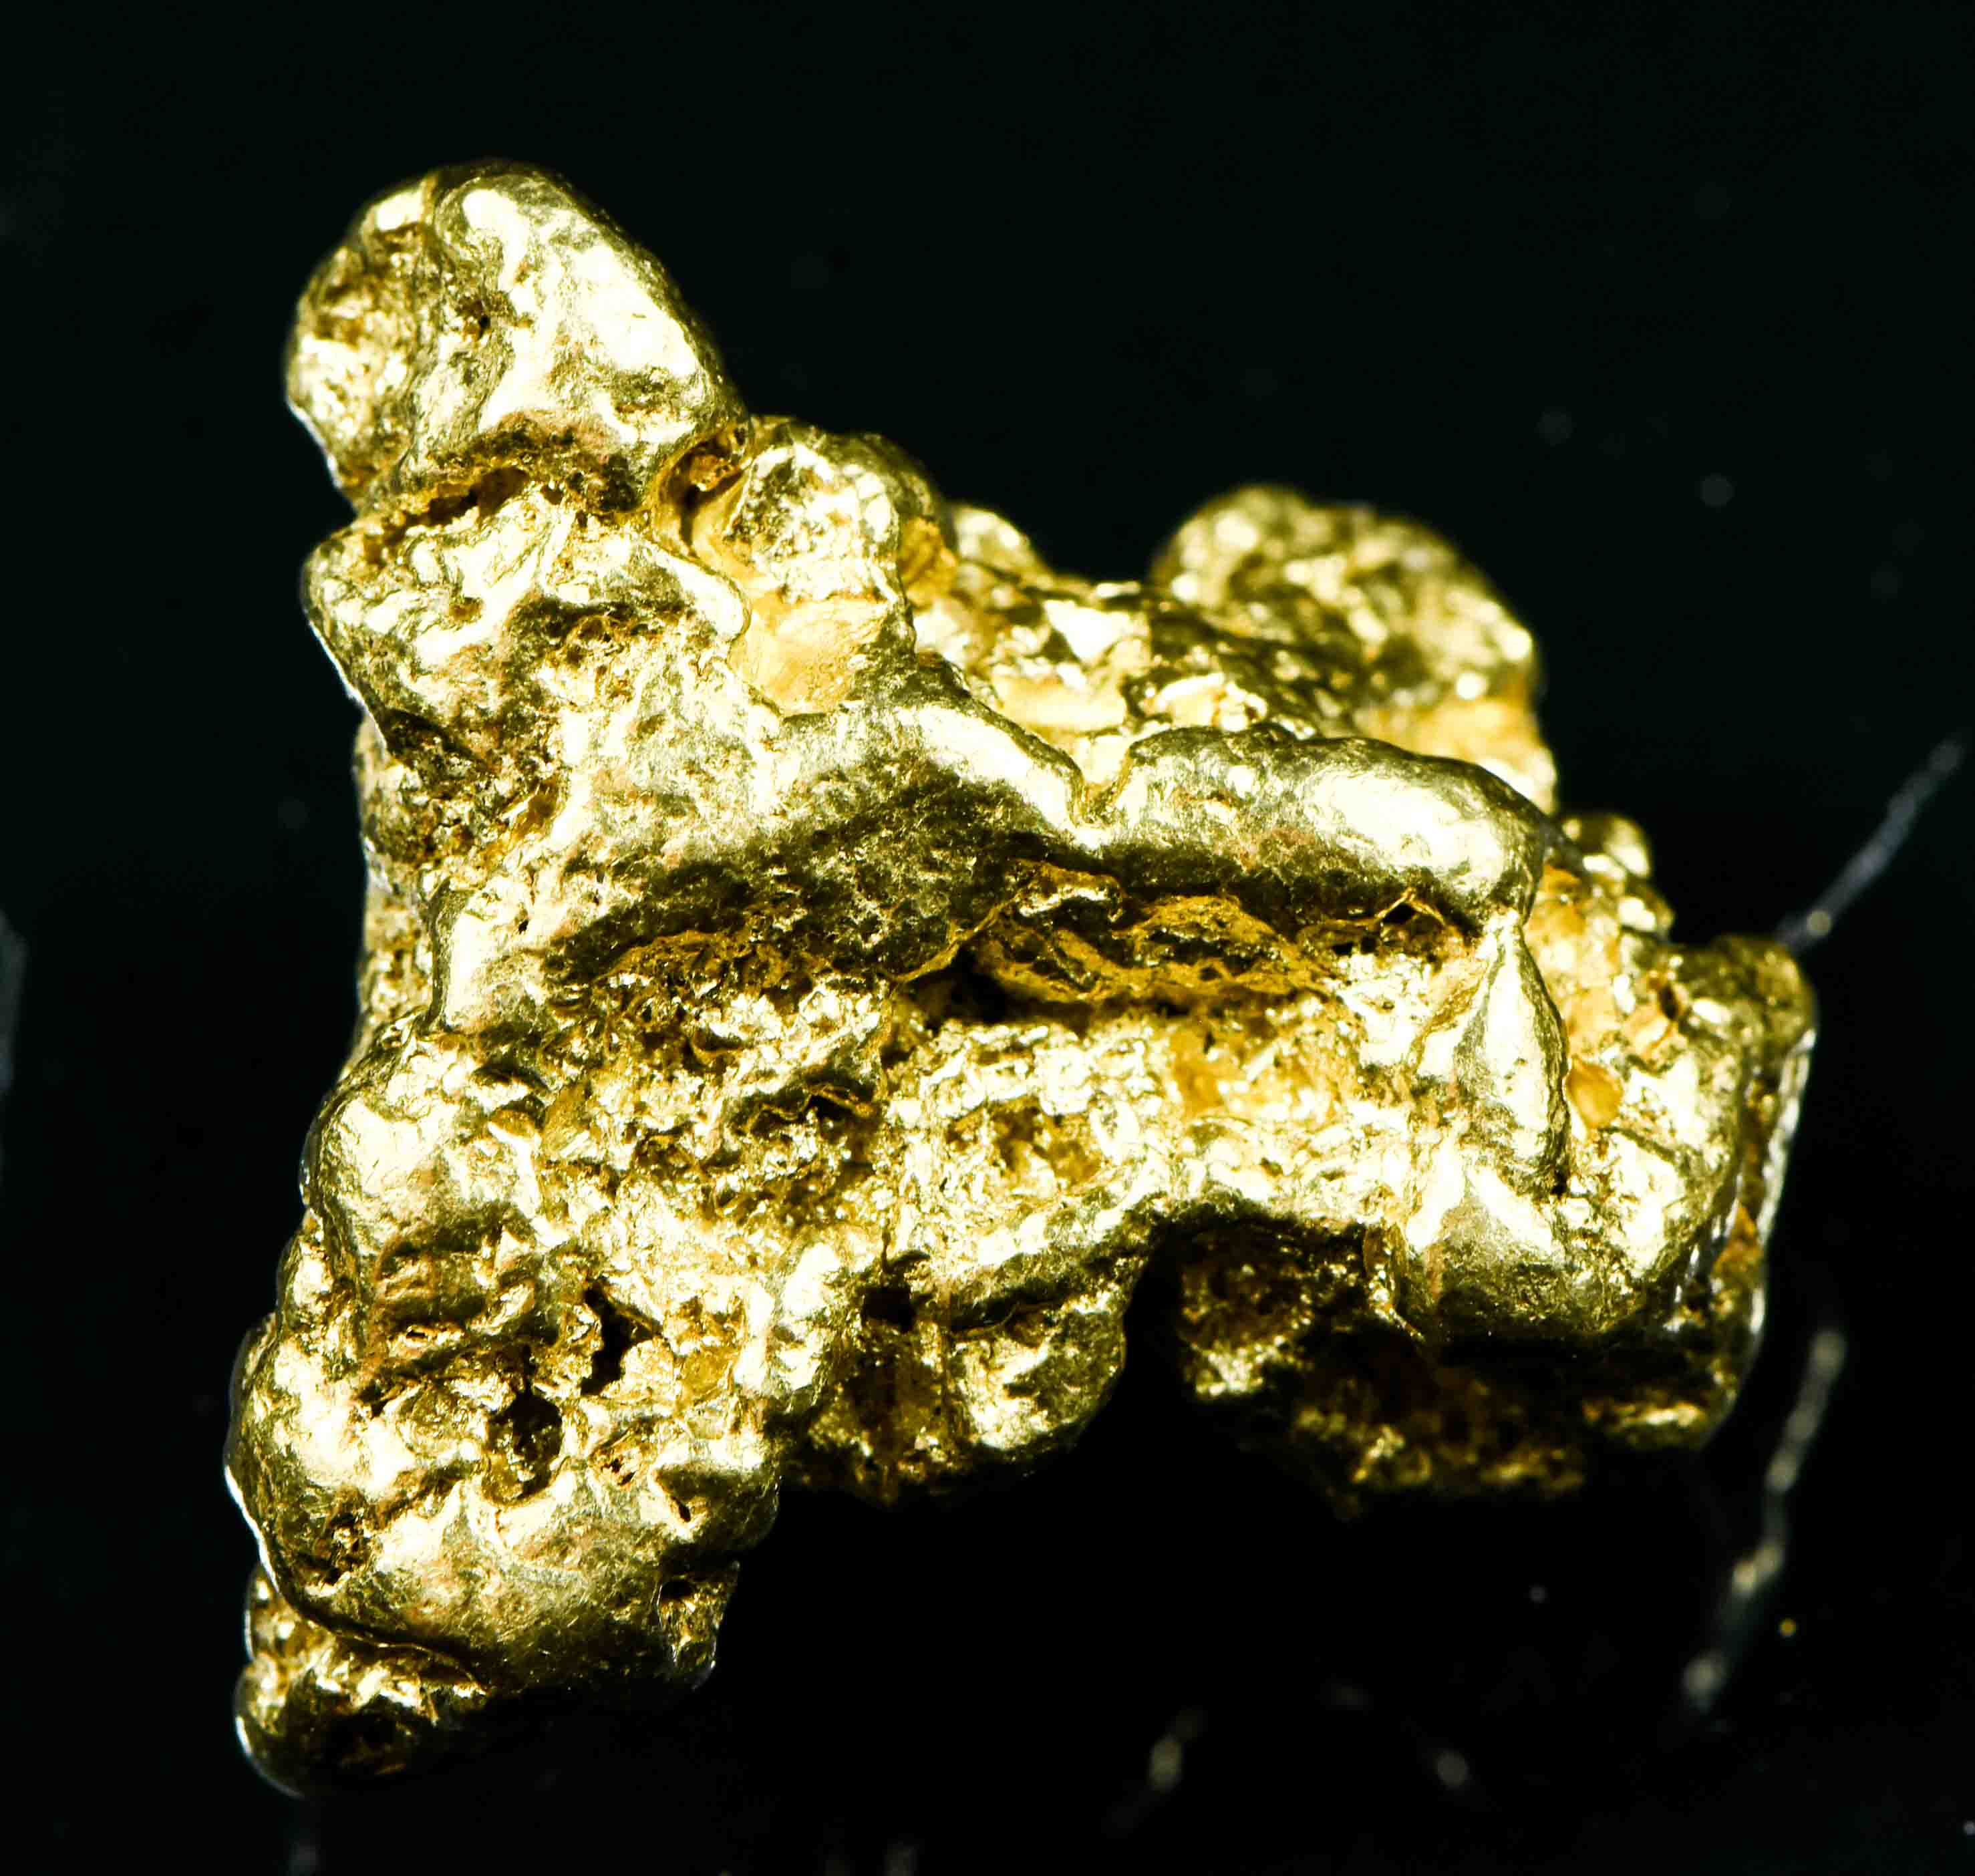 #541 Large Alaskan BC Gold Nugget 21.41 Grams Genuine